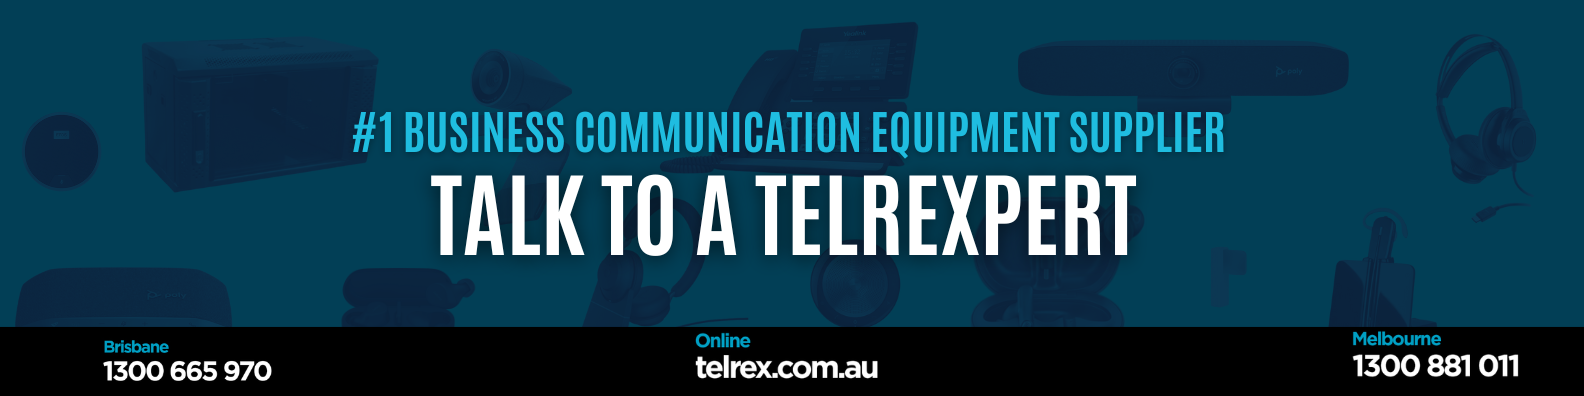 Communication Equipment Supplier Brisbane 